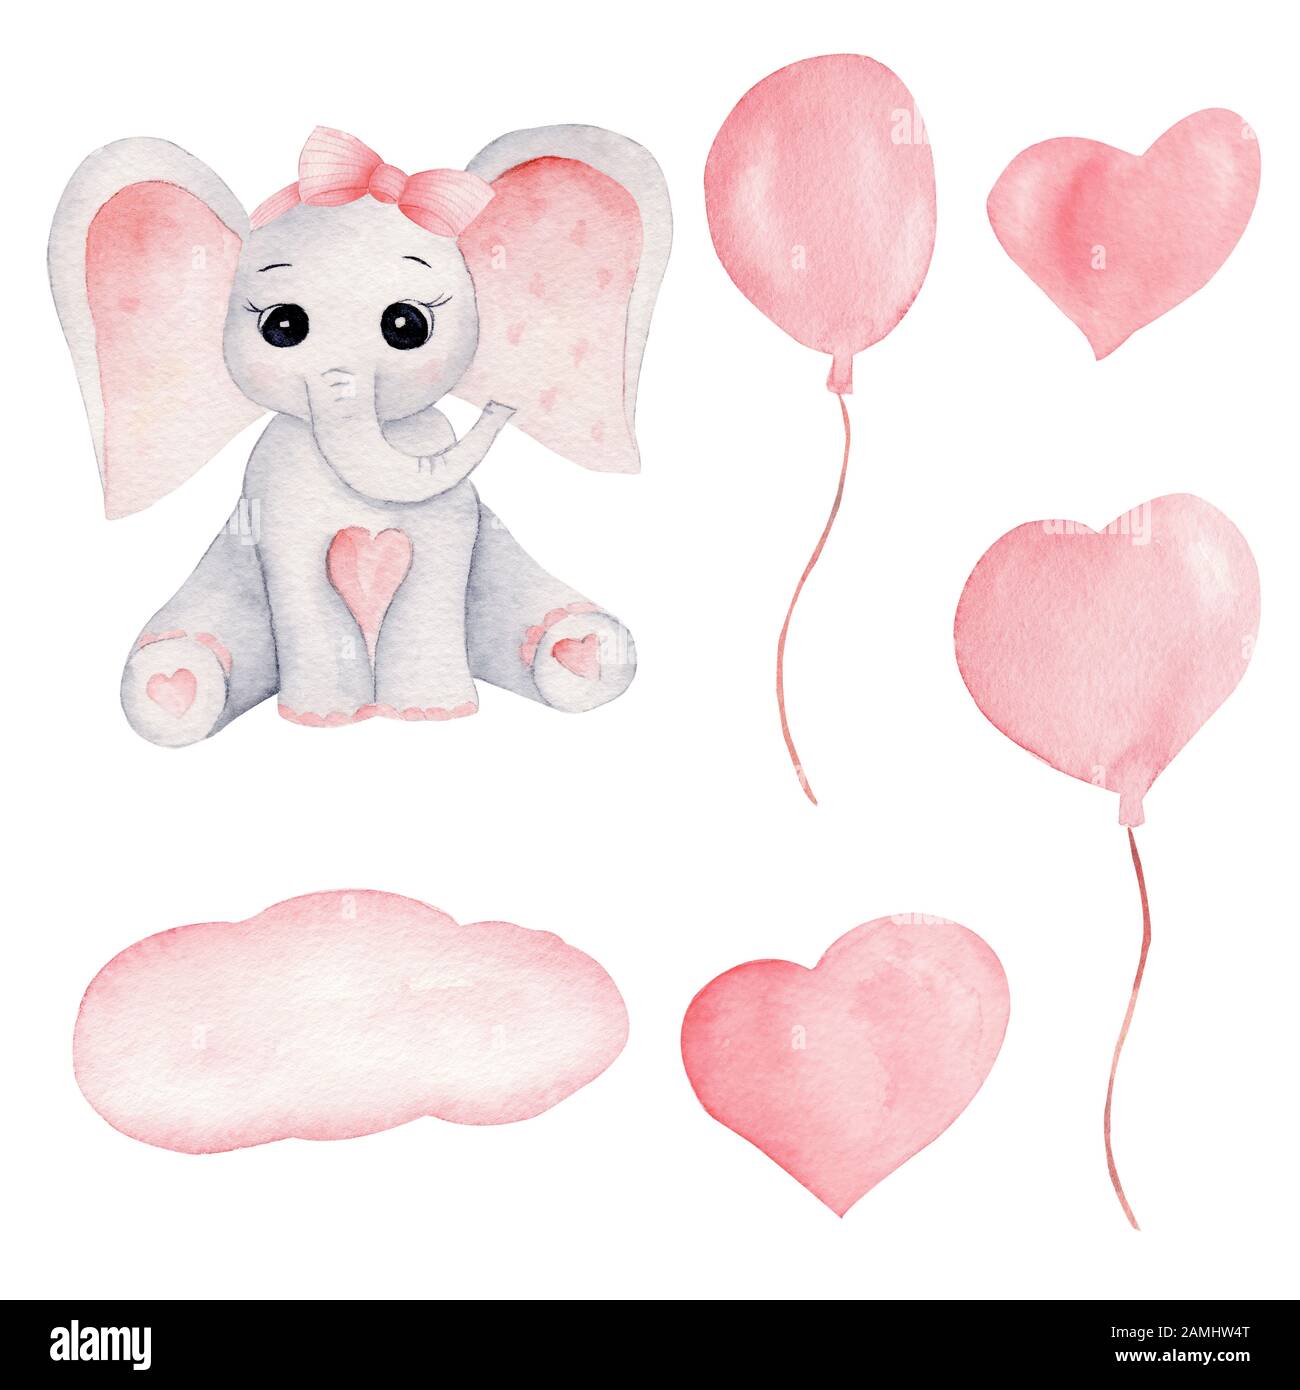 Baby elefante e palloncini rosa disegni a mano watercolor illustrazioni  set. Piccolo vitello grigio elefante con grandi orecchie rosa e prua. Pesca  acquarelle infantile Foto stock - Alamy